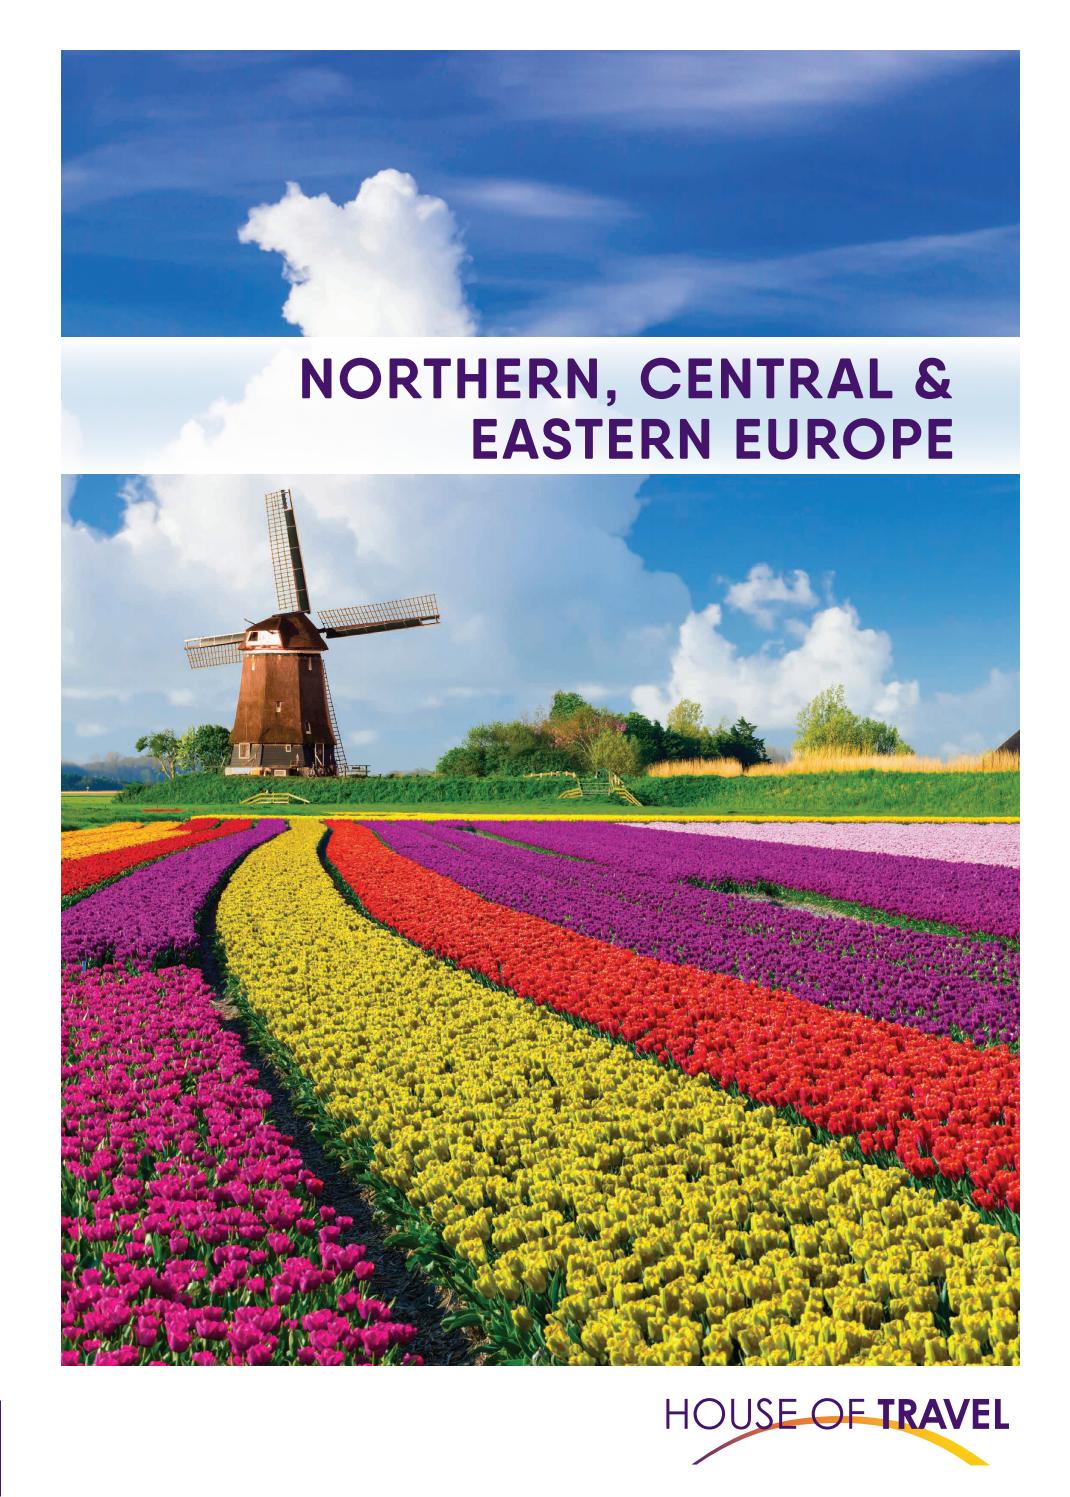 Tunnel Englischer Garten Schön northern Central & Eastern Europe Brochure 2020 by House Of